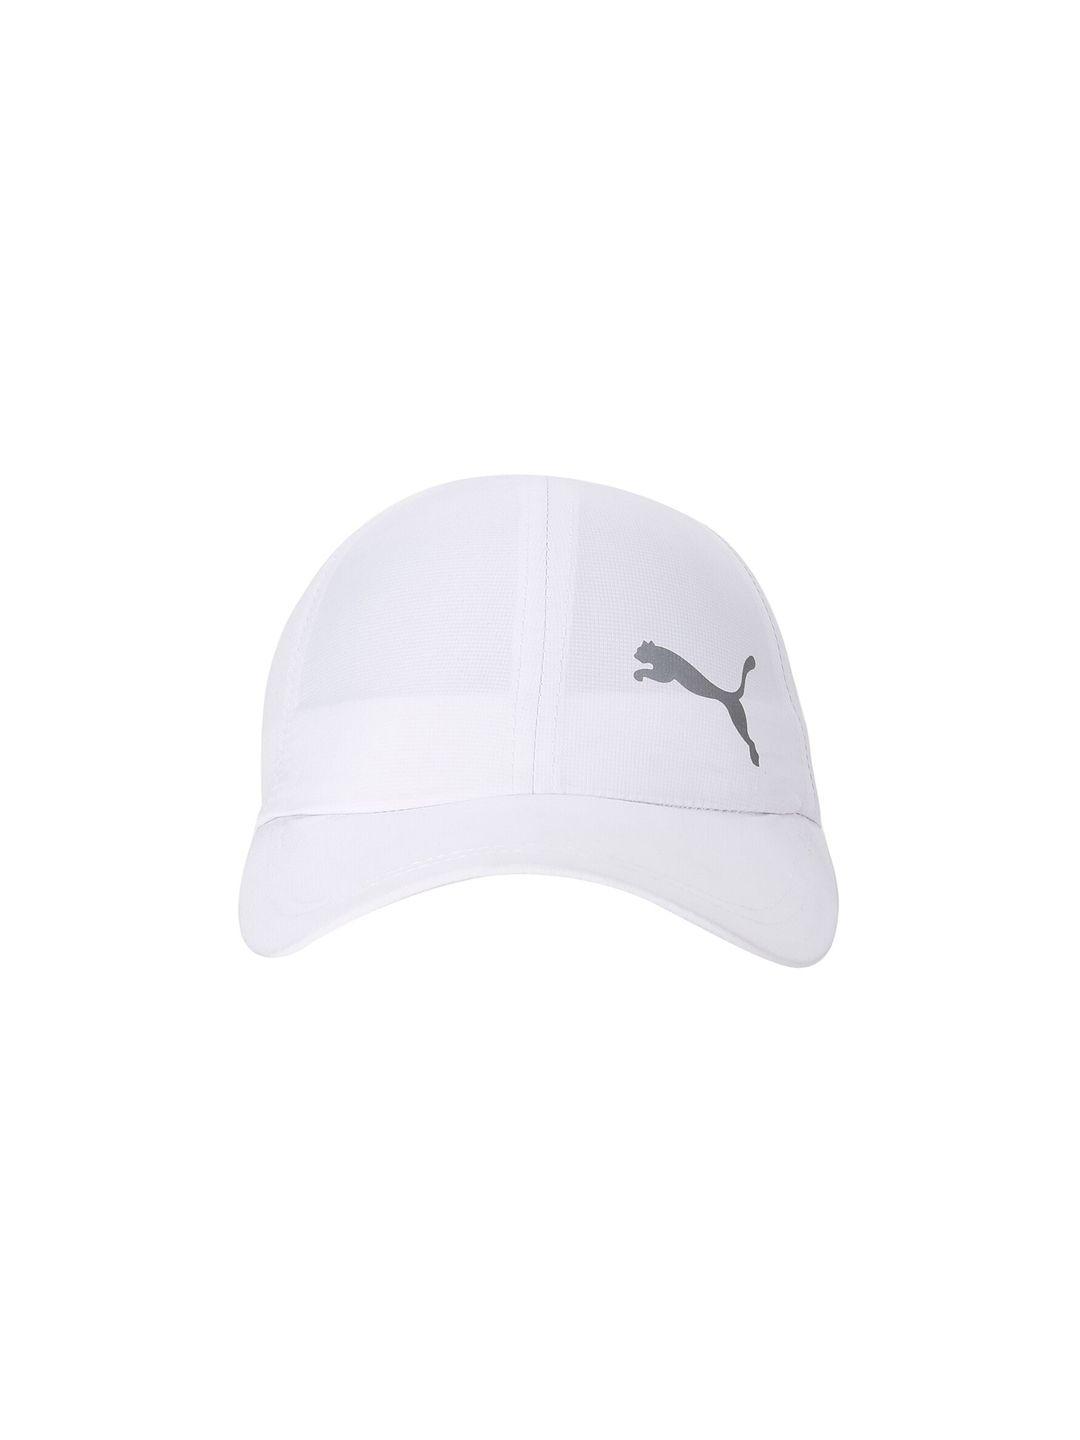 puma-unisex-white-&-grey-essential-running-cap